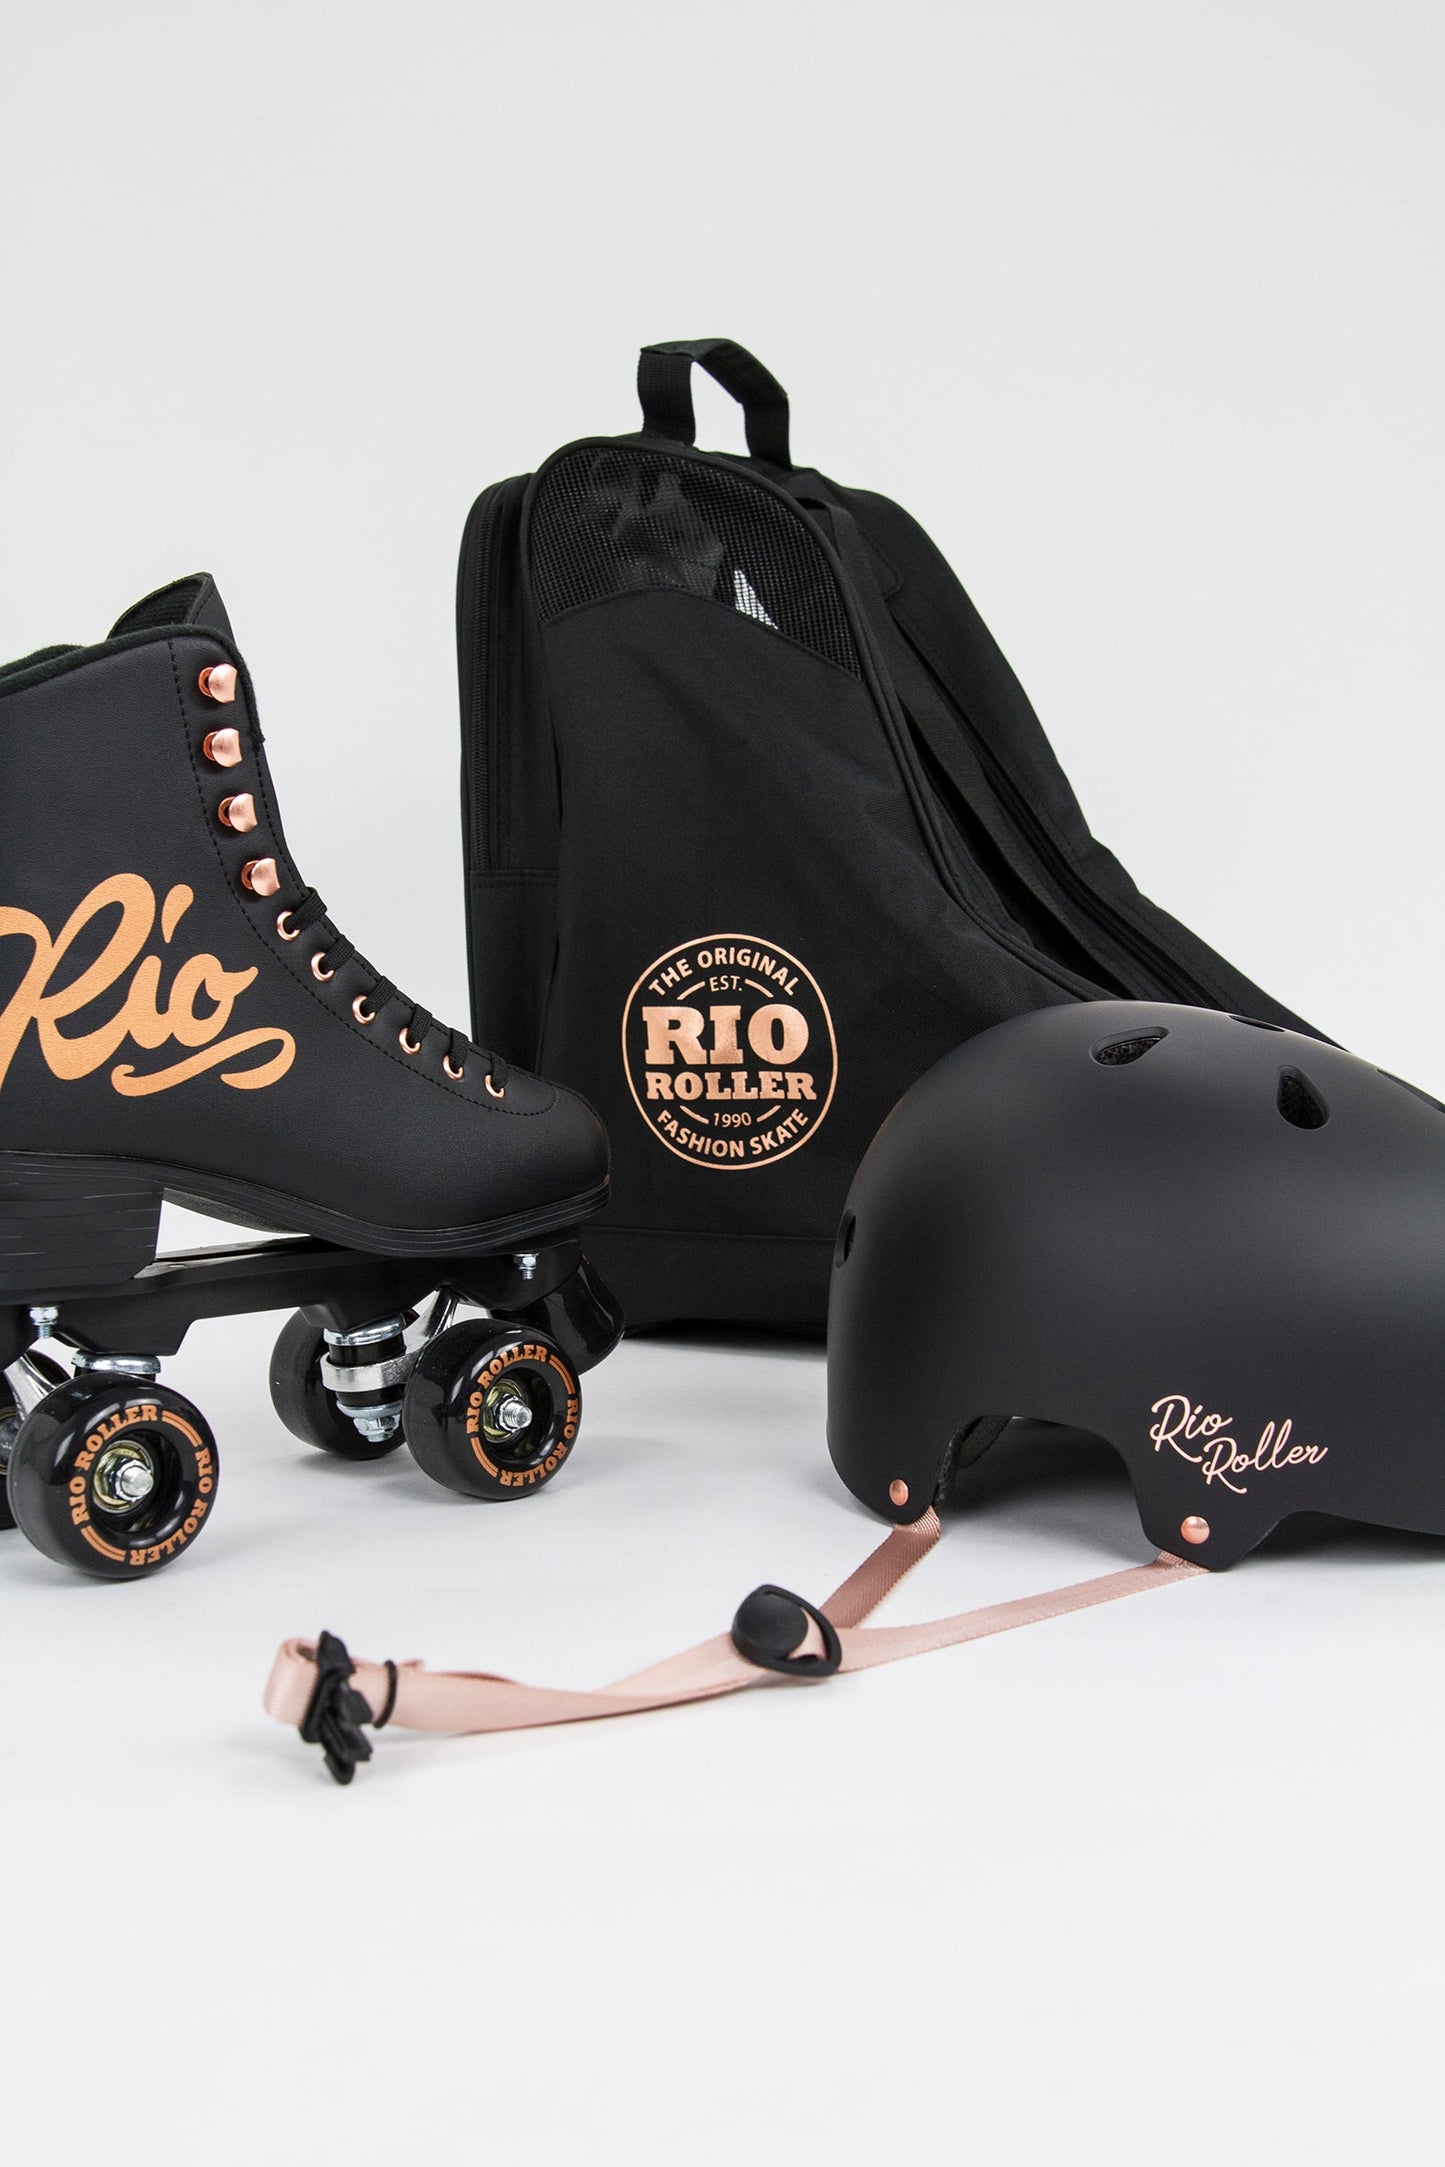 Rio Roller Rose Quad Roller Skates - Black - Momma Trucker Skates